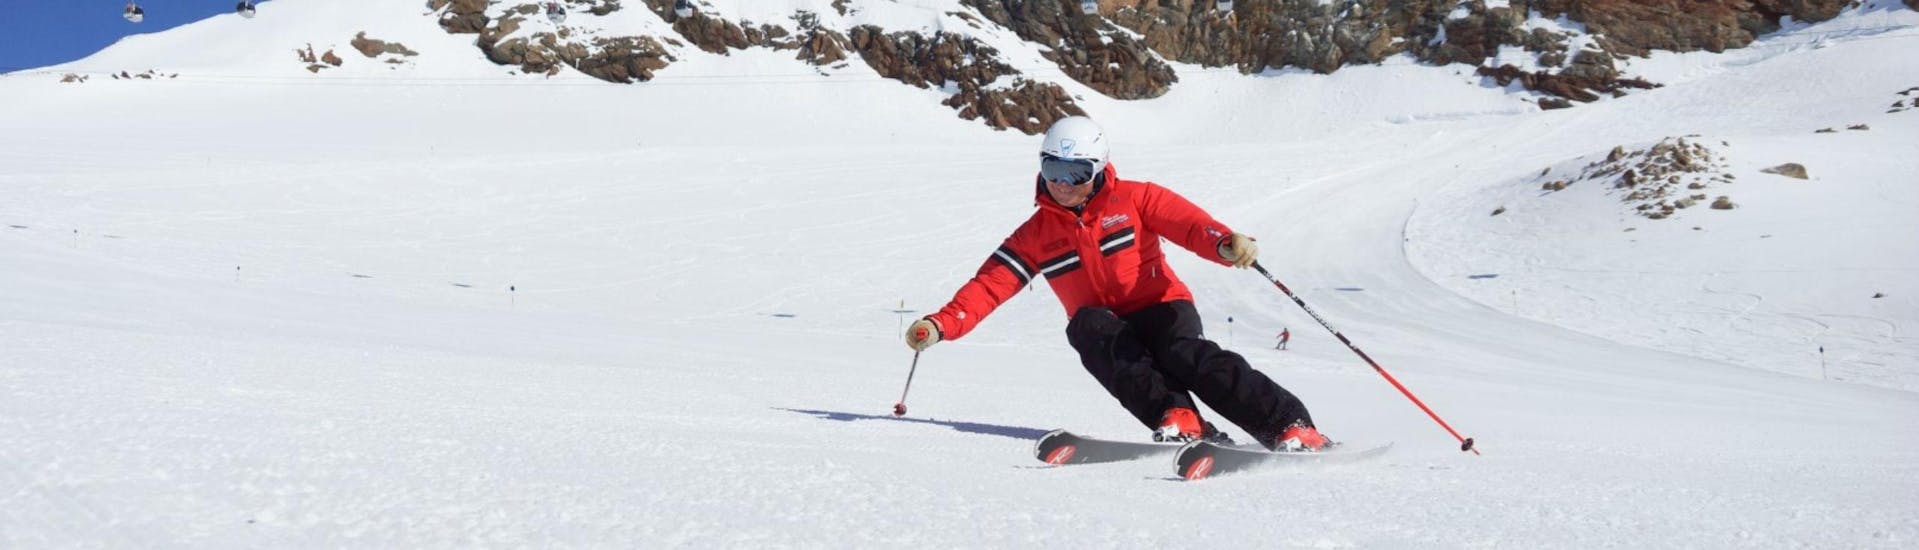 Un moniteur de ski de l'école de ski Ski- und Snowboardschule Vacancia montre la bonne technique de ski pendant un des cours particuliers de ski pour adultes - tous niveaux.